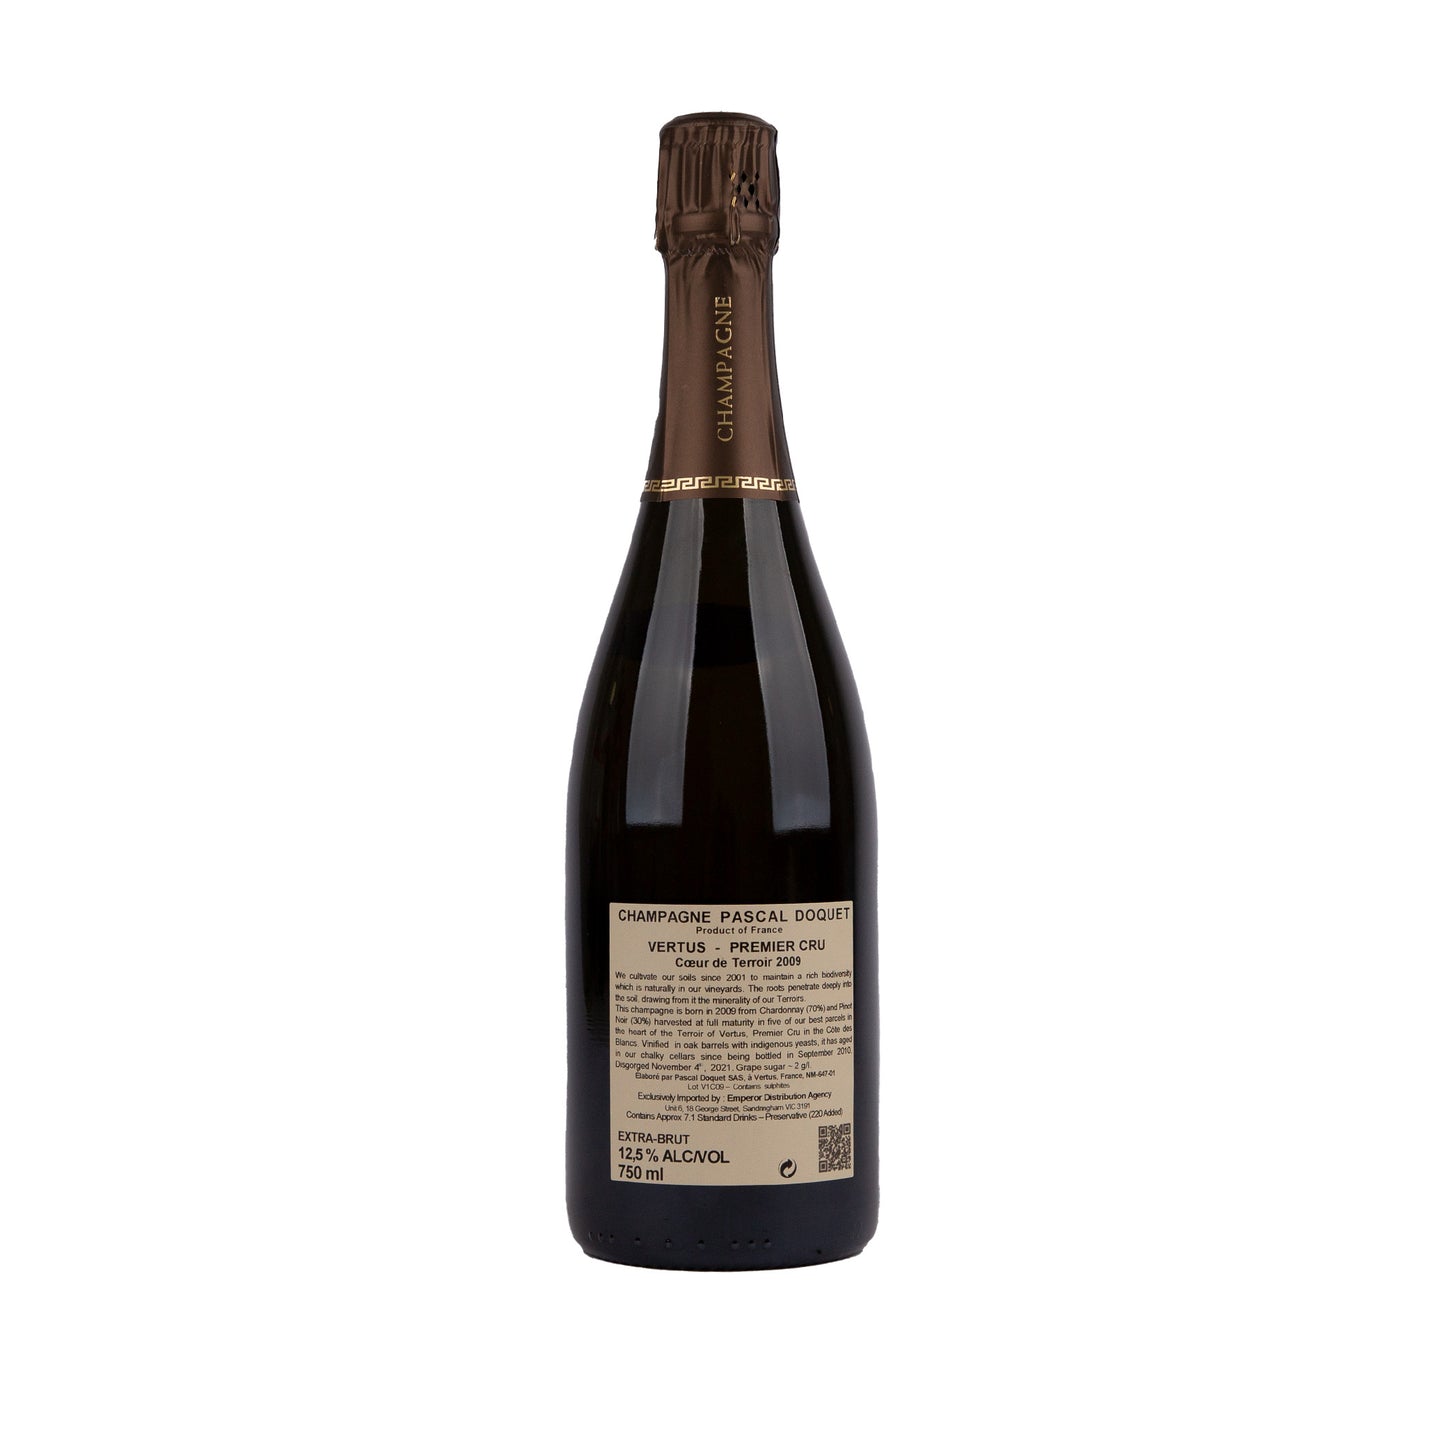 Pascal-Doquet-Vertus-Coeur-de-Terroir-09-emperor-champagne-back